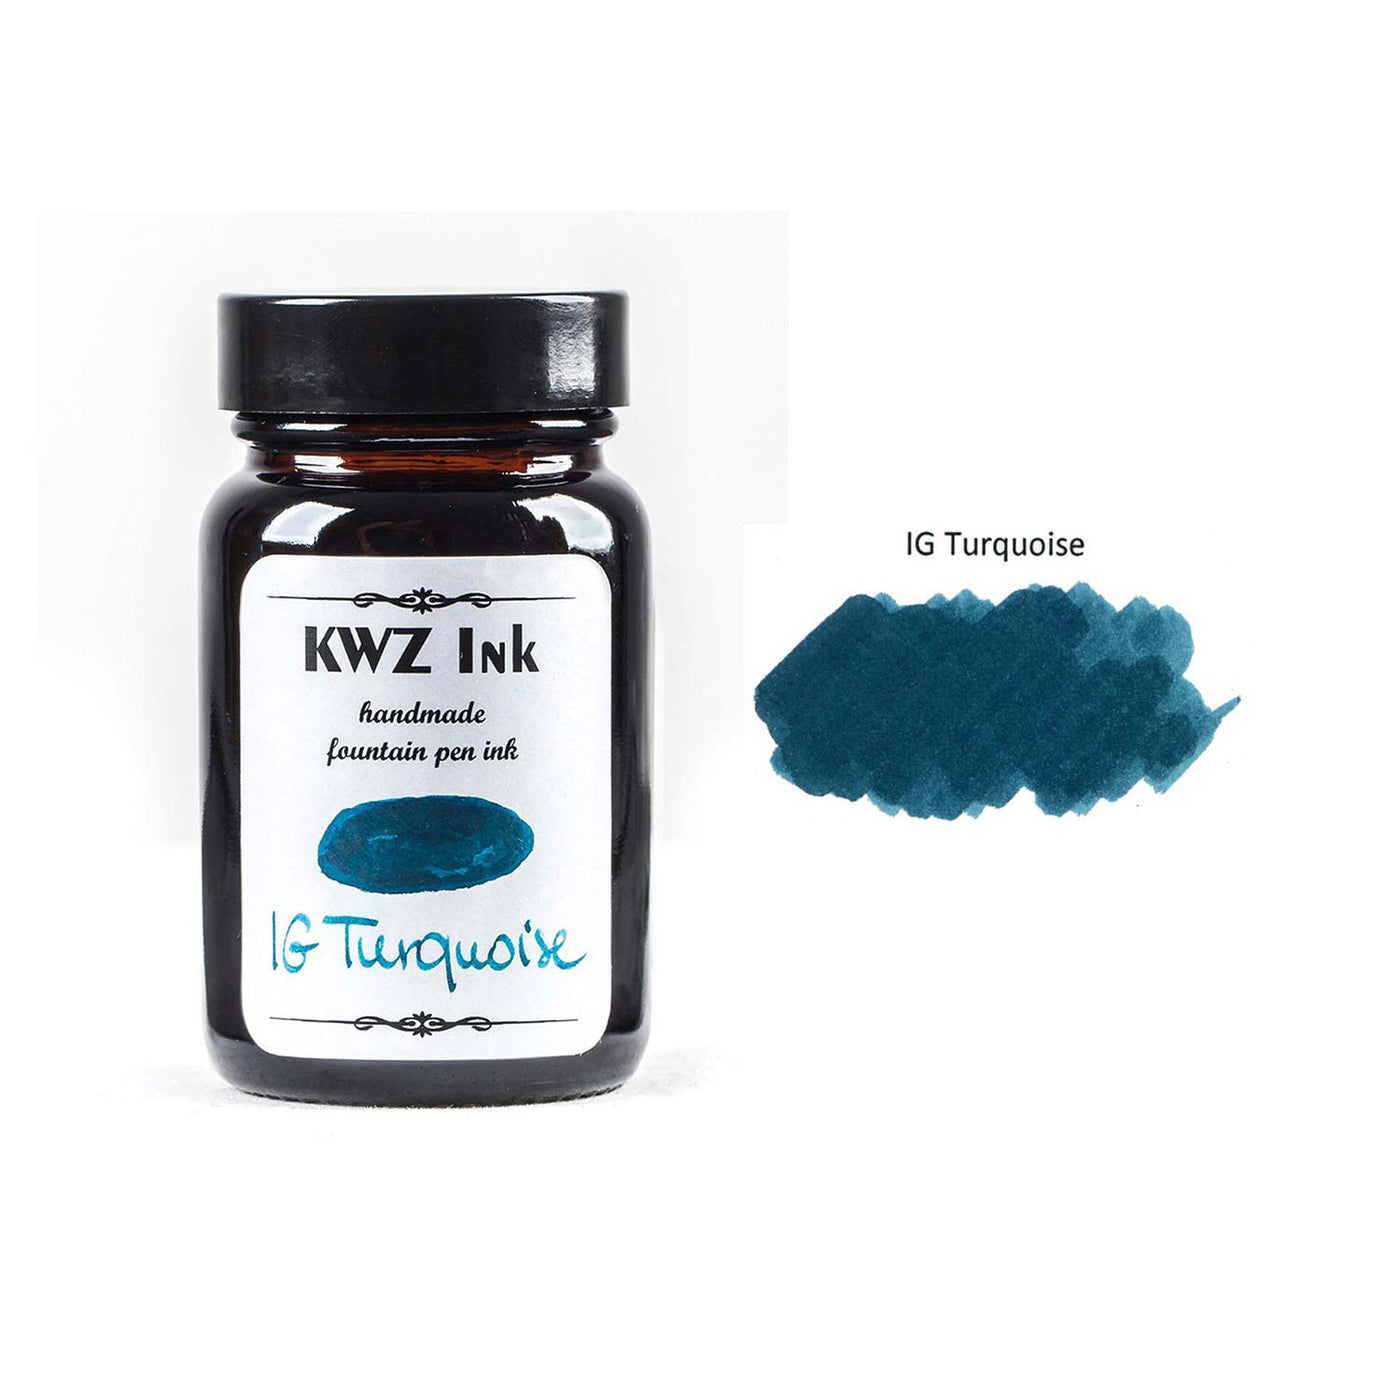 KWZ Iron Gall Turquoise Ink Bottle - 60ml